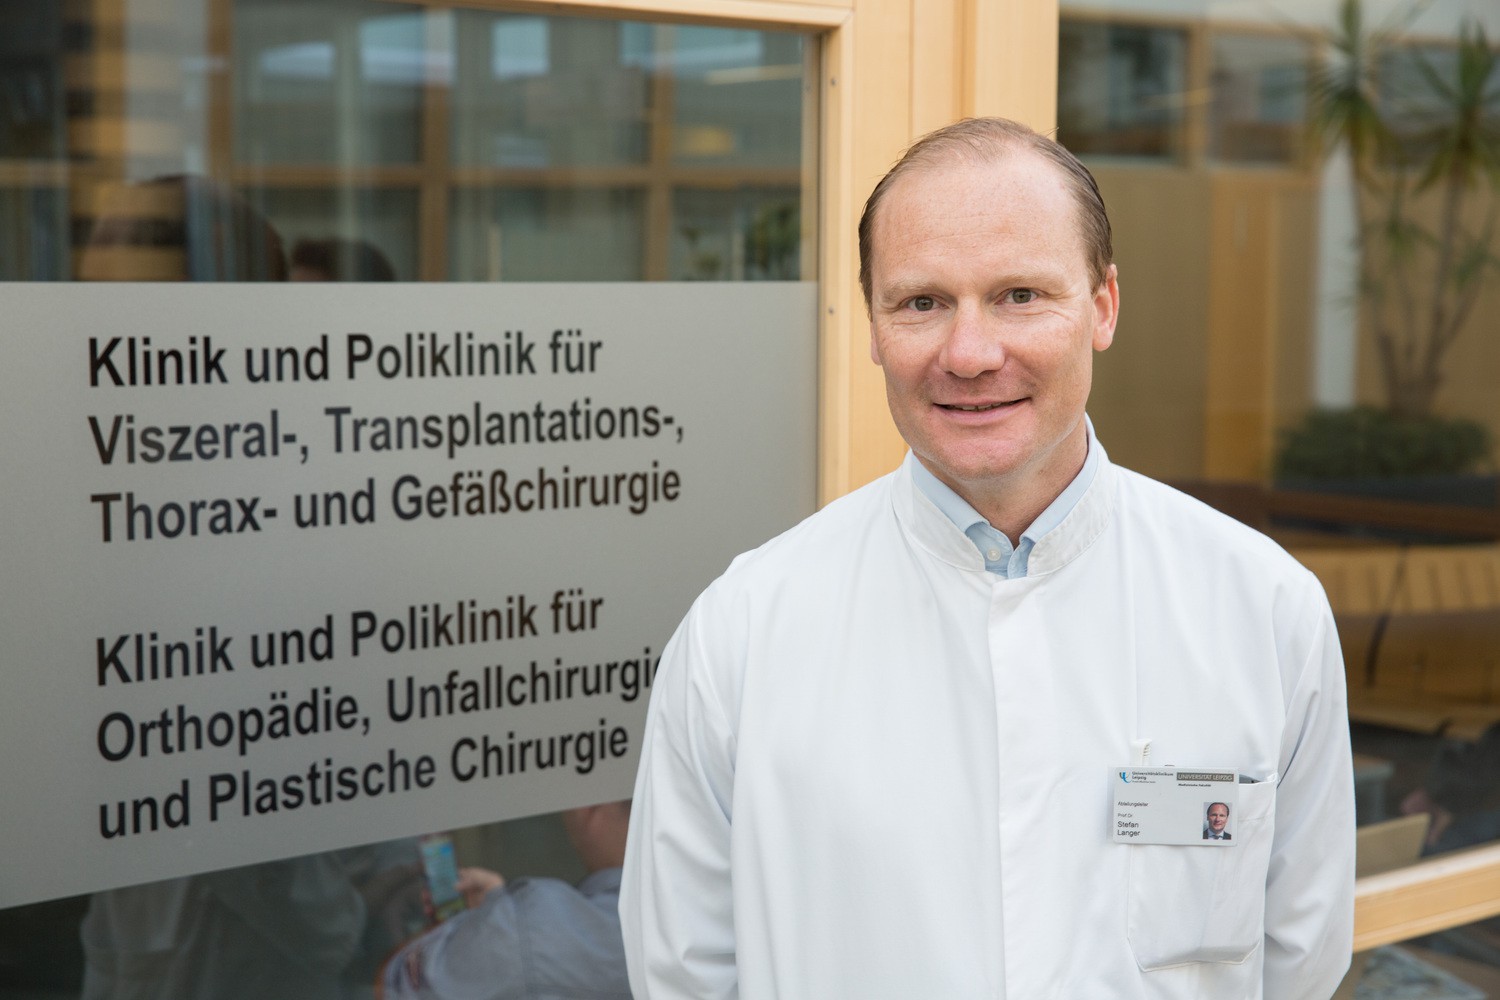 Bereichsleiter Prof. Stefan Langer: „Die Plastische Chirurgie ist ein junges und innovatives chirurgisches Fach."